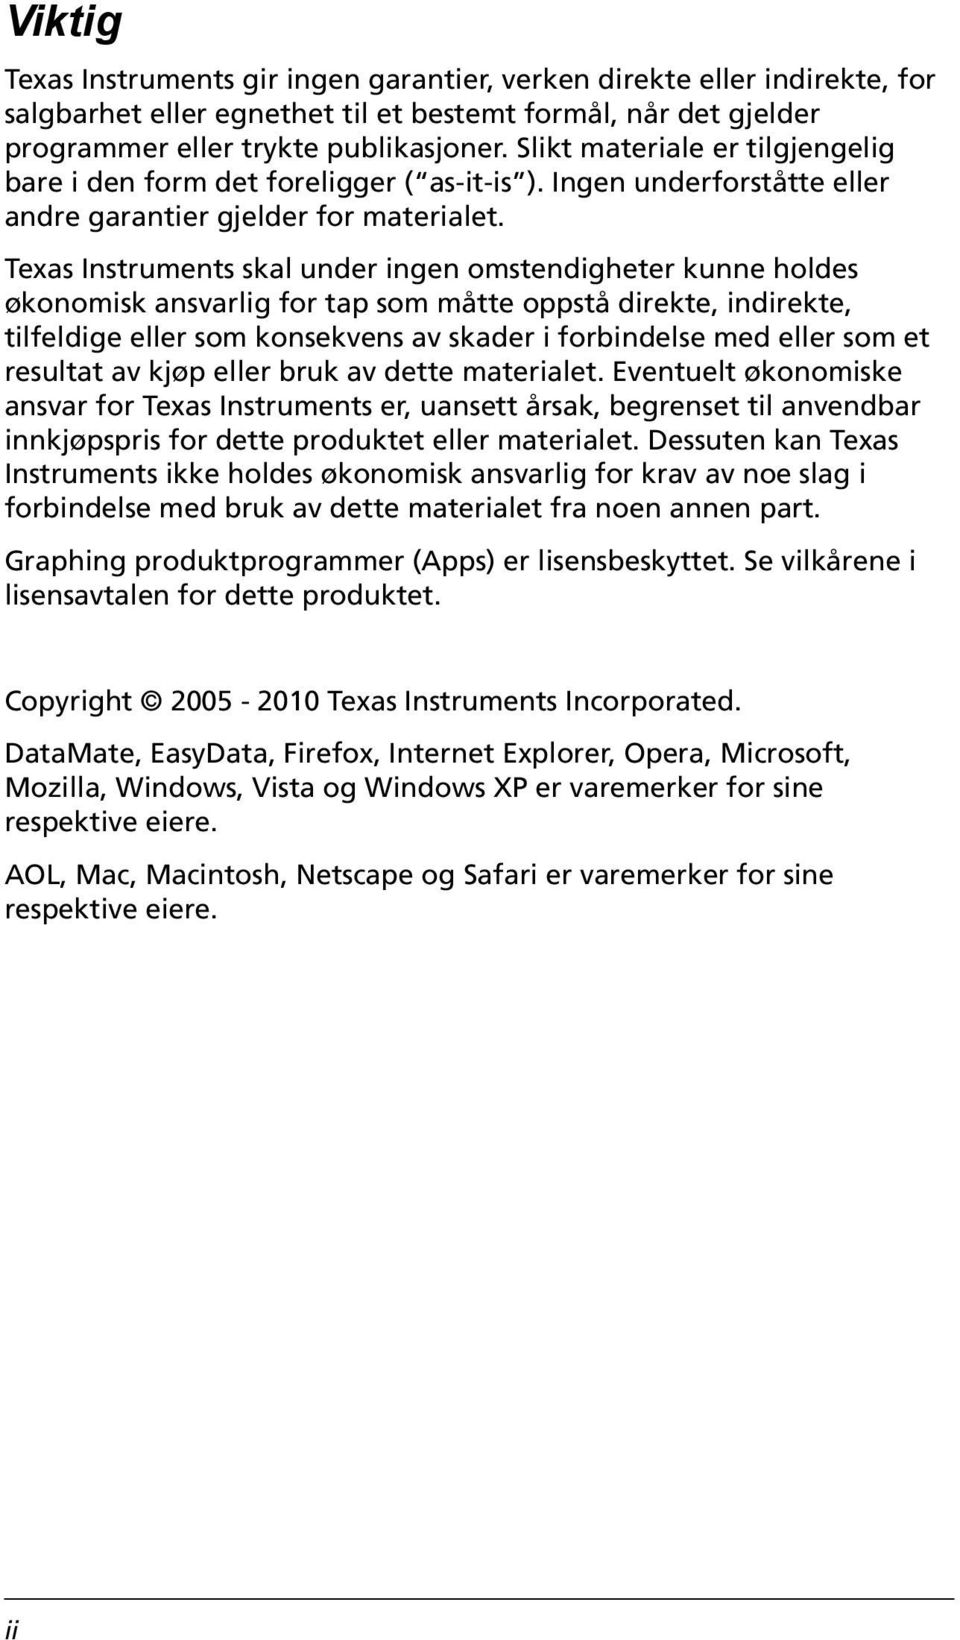 Texas Instruments skal under ingen omstendigheter kunne holdes økonomisk ansvarlig for tap som måtte oppstå direkte, indirekte, tilfeldige eller som konsekvens av skader i forbindelse med eller som